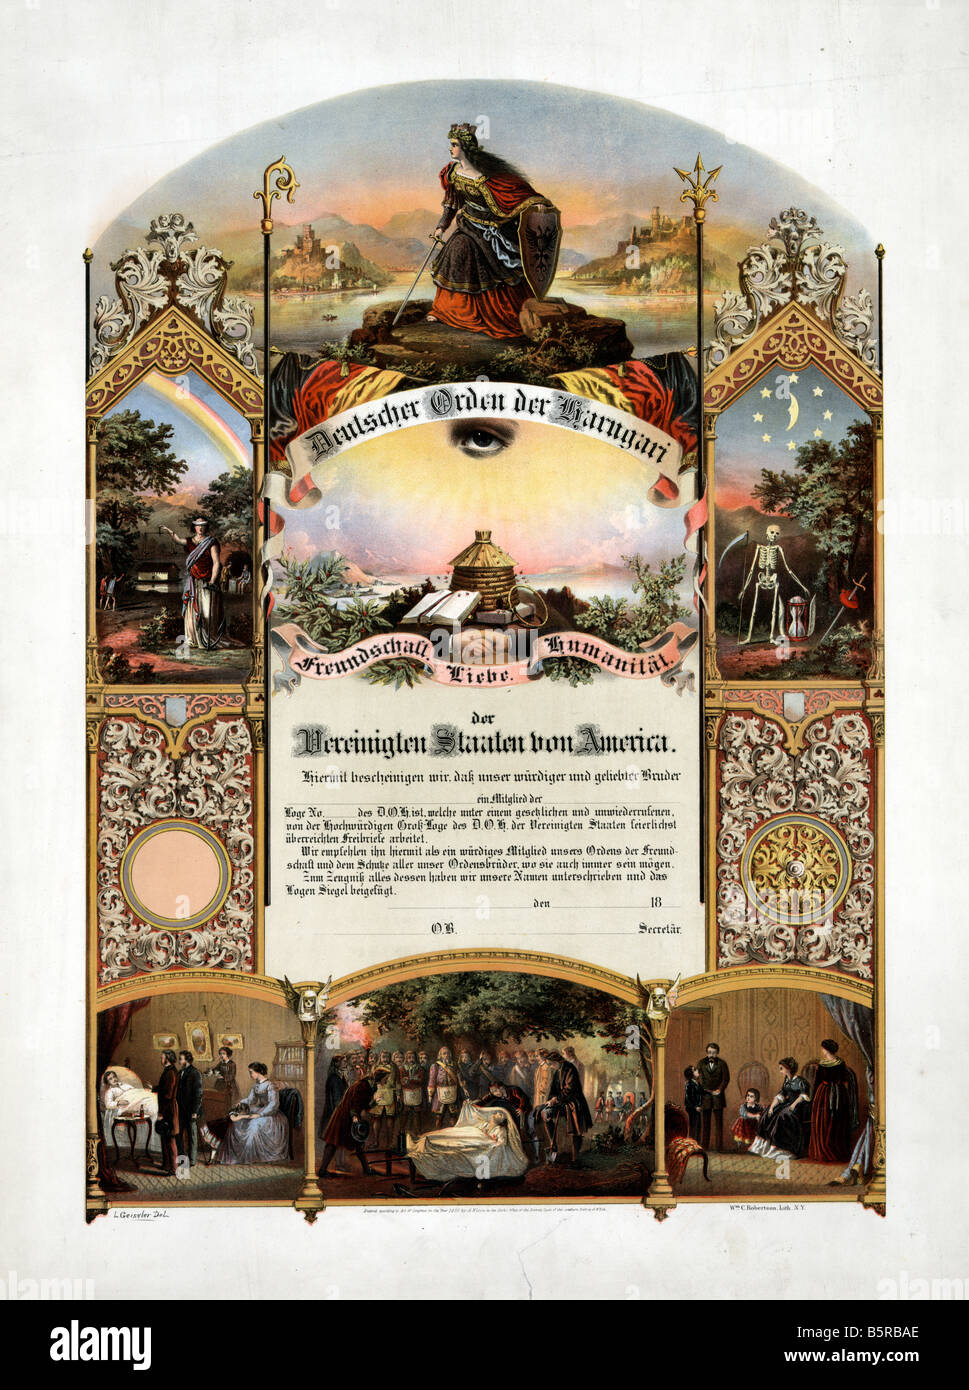 Deutscher orden united states, 1890 Banque D'Images